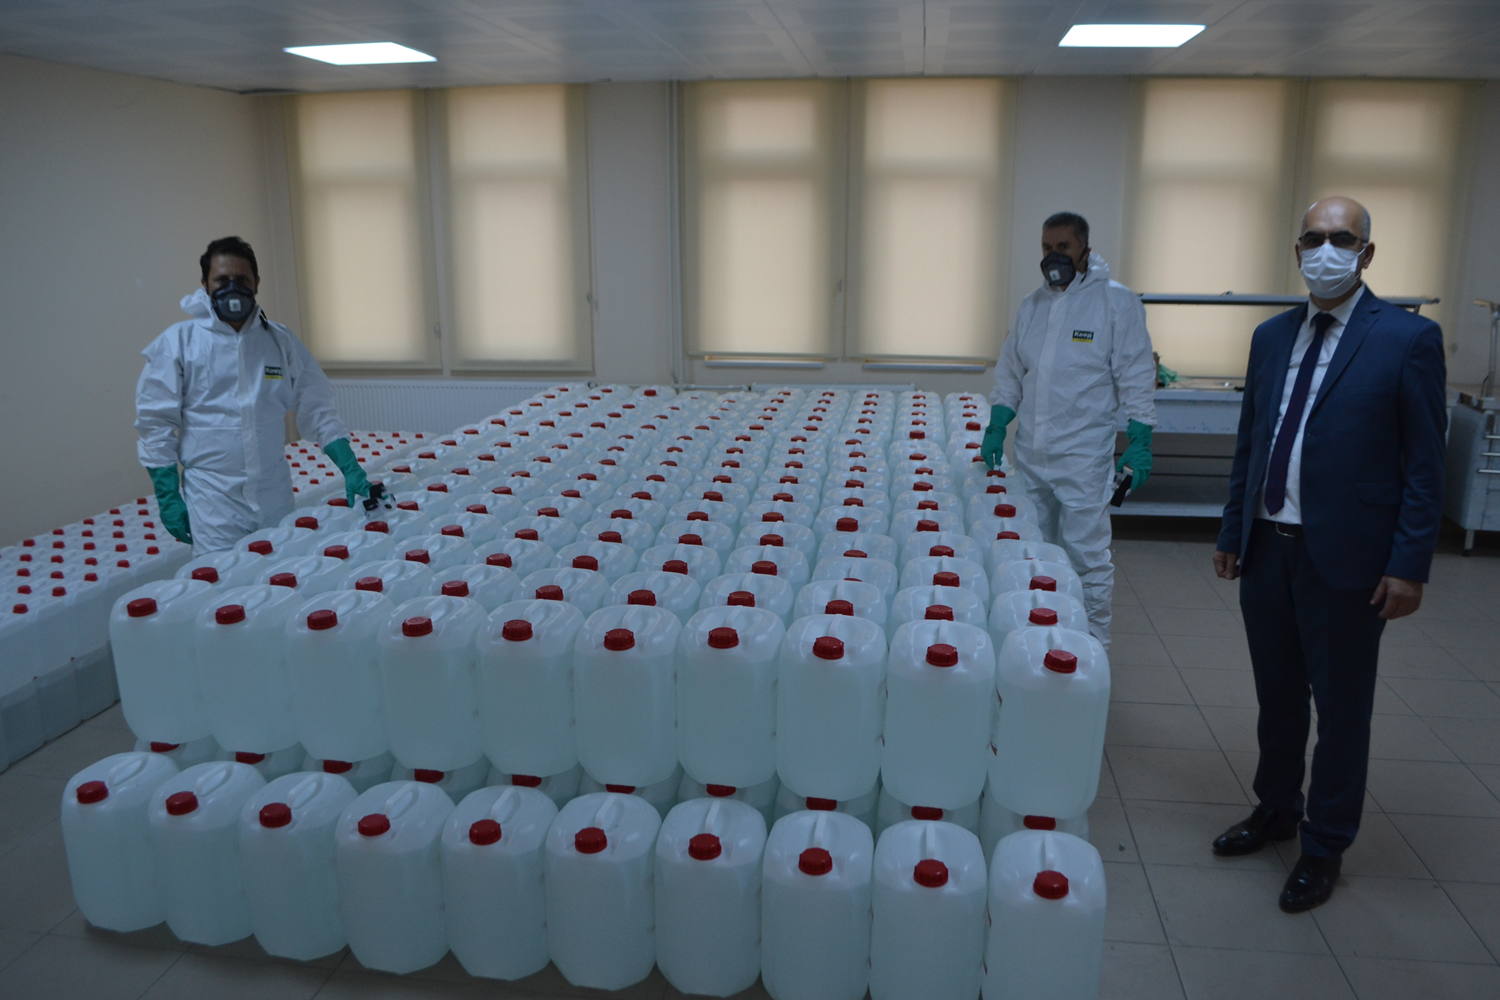 Milli Eitim Bakanl'nn denei ile kurulan atlyede lise rencileri gnde bir ton dezenfektan retiyor